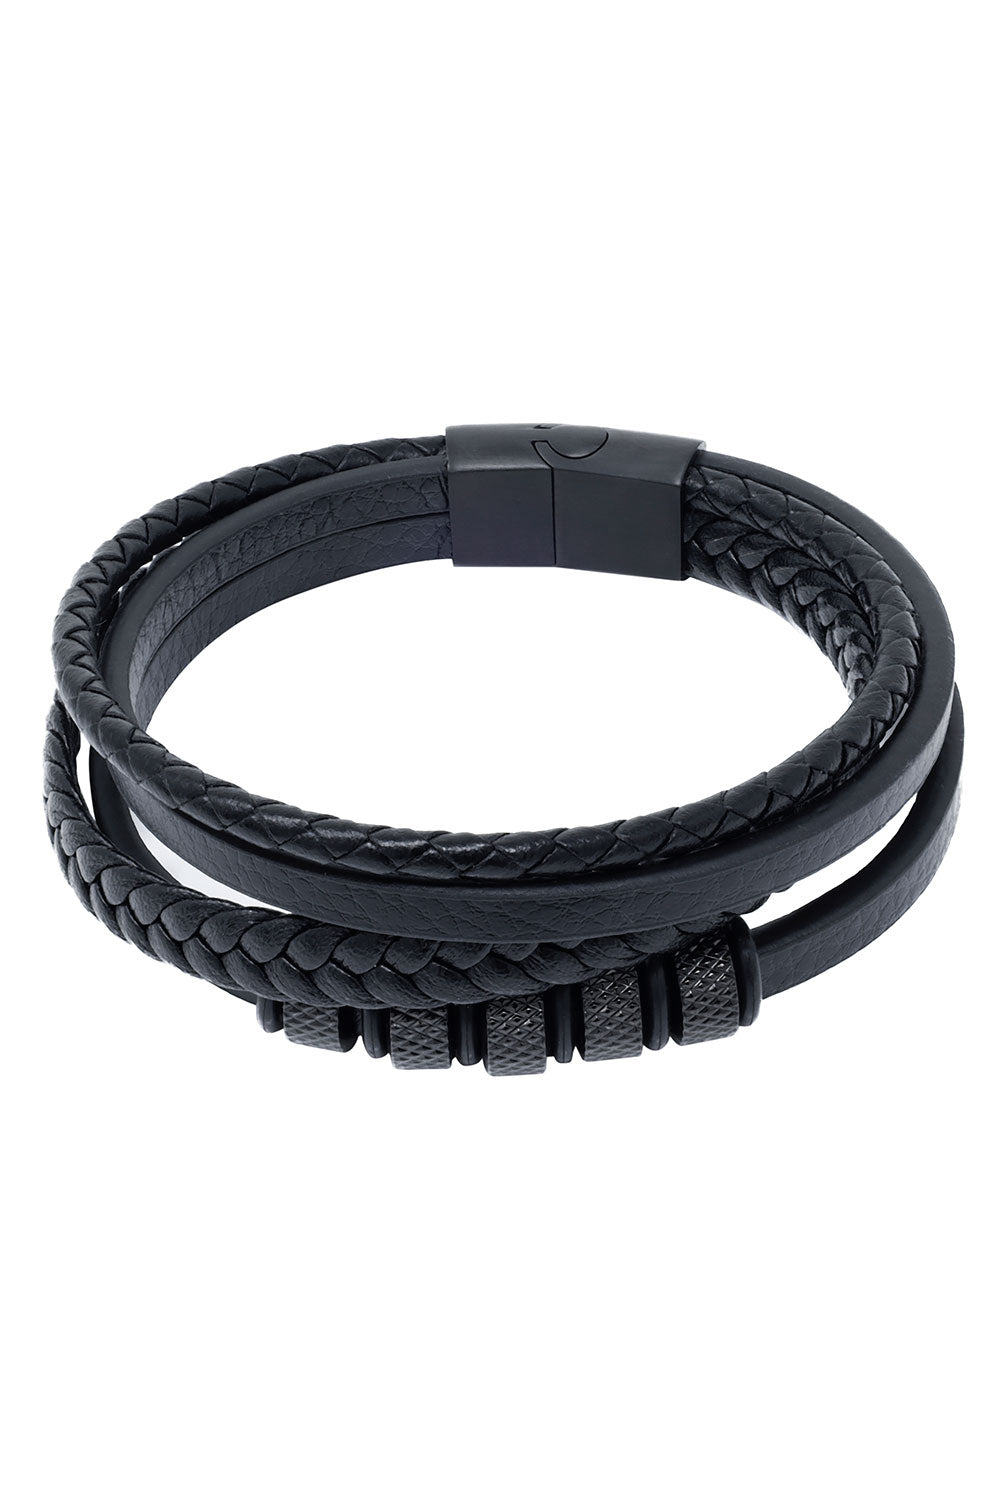 Barabas Unisex Multi-Layer Rope Braided Leather Bangle Bracelets 4BMS16 Black